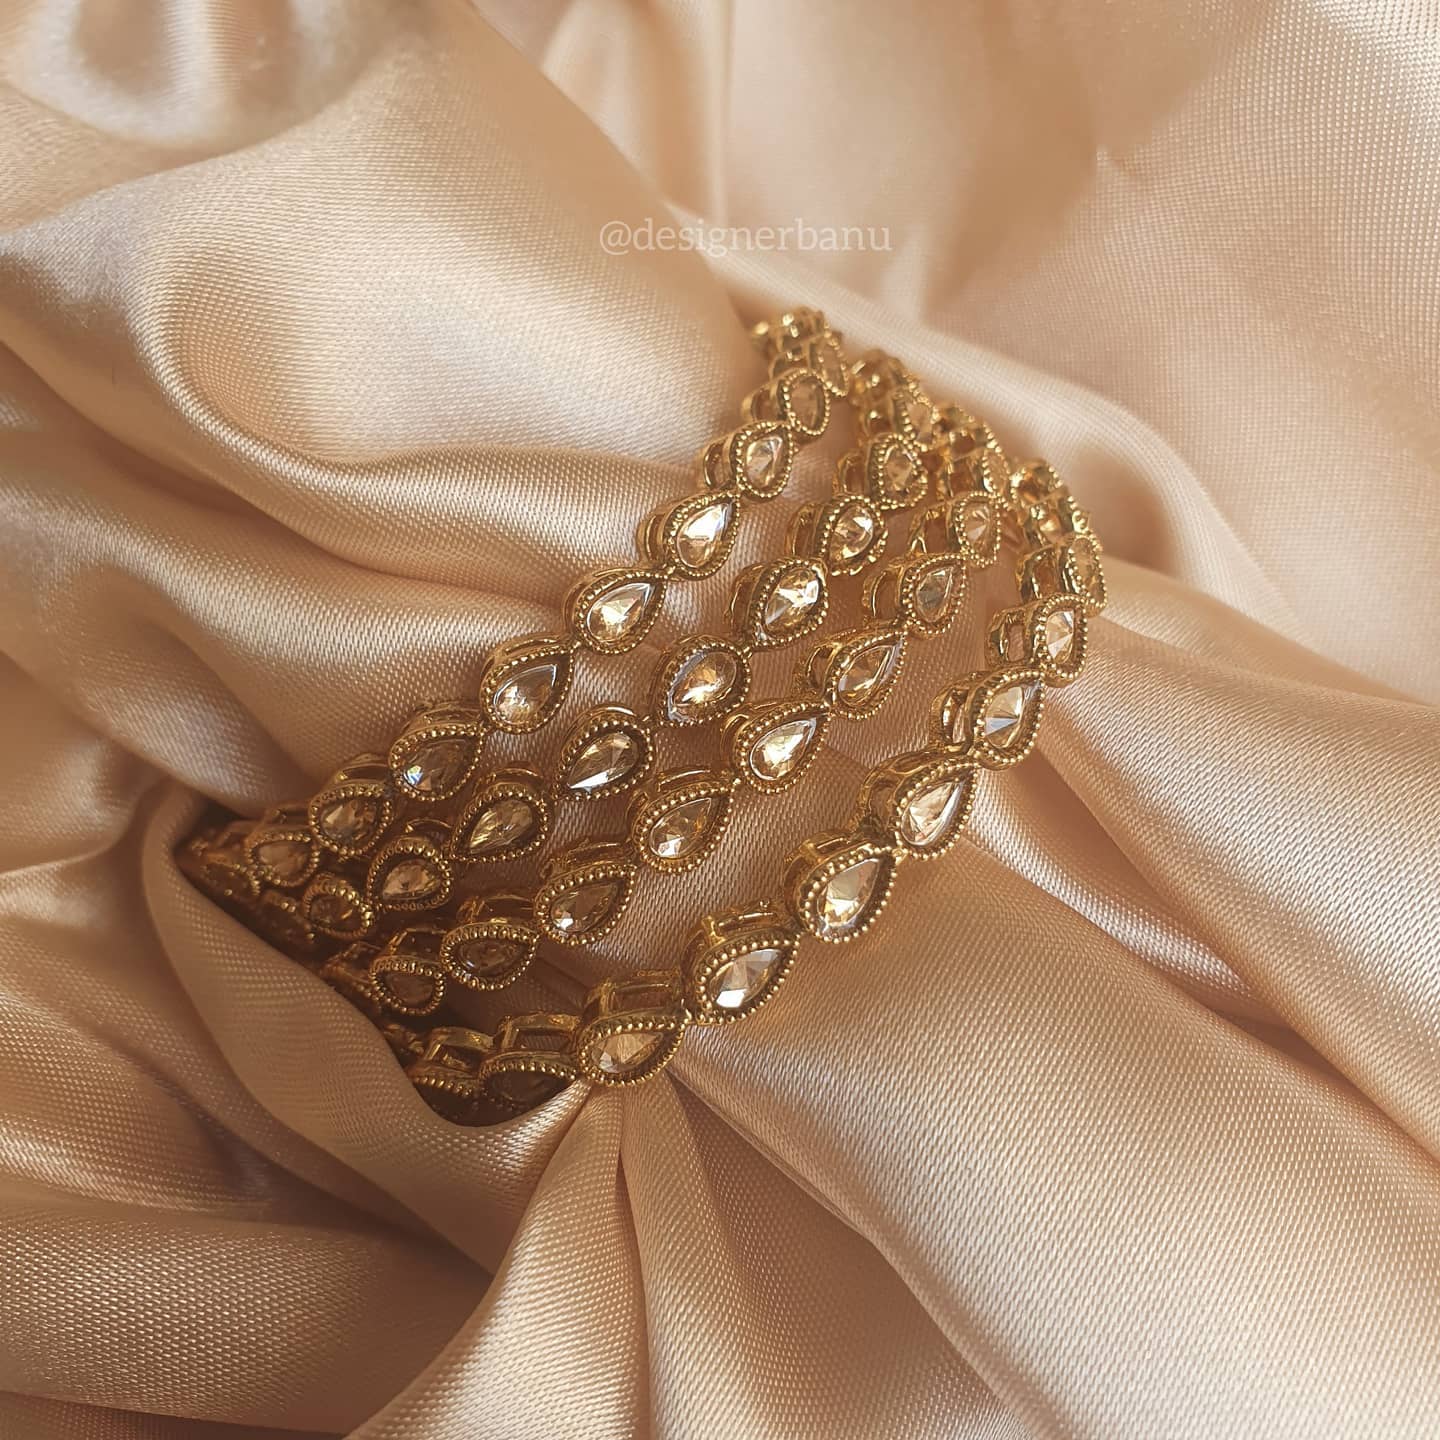 Antique gold fine polished bangles